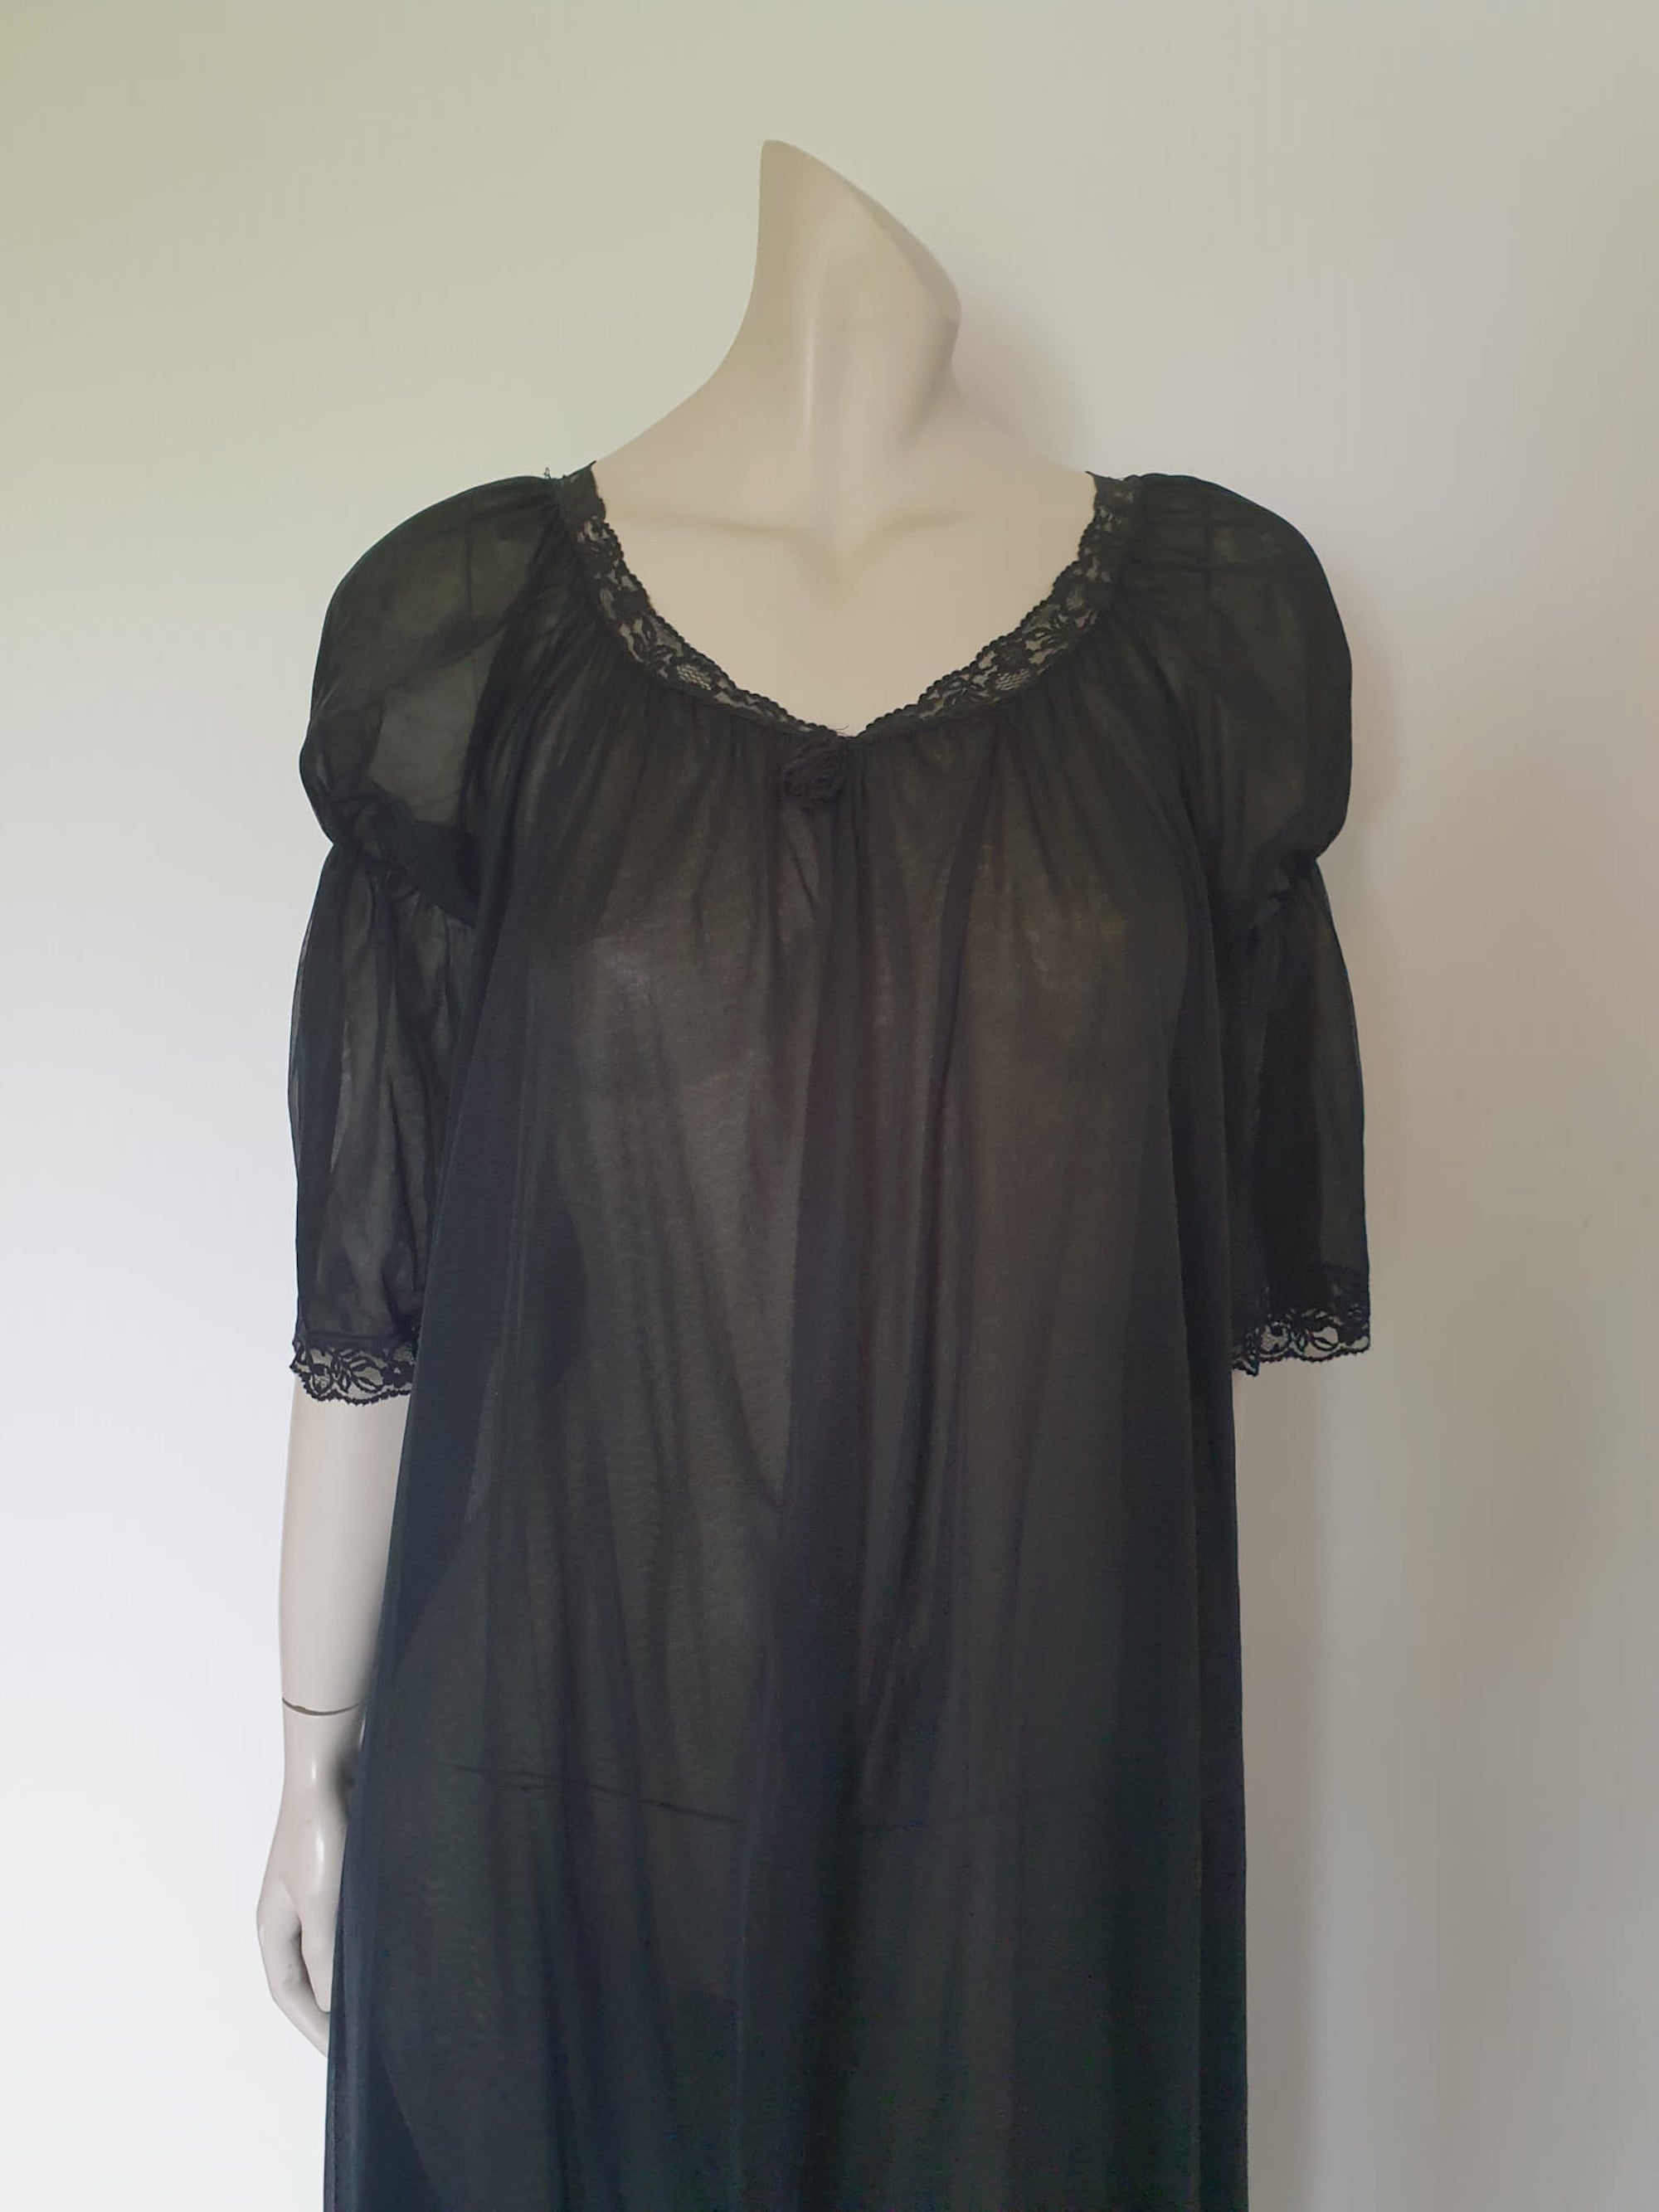 vintage 1960s 1970s sheer long black peignoir or robe with fancy sleeves medium